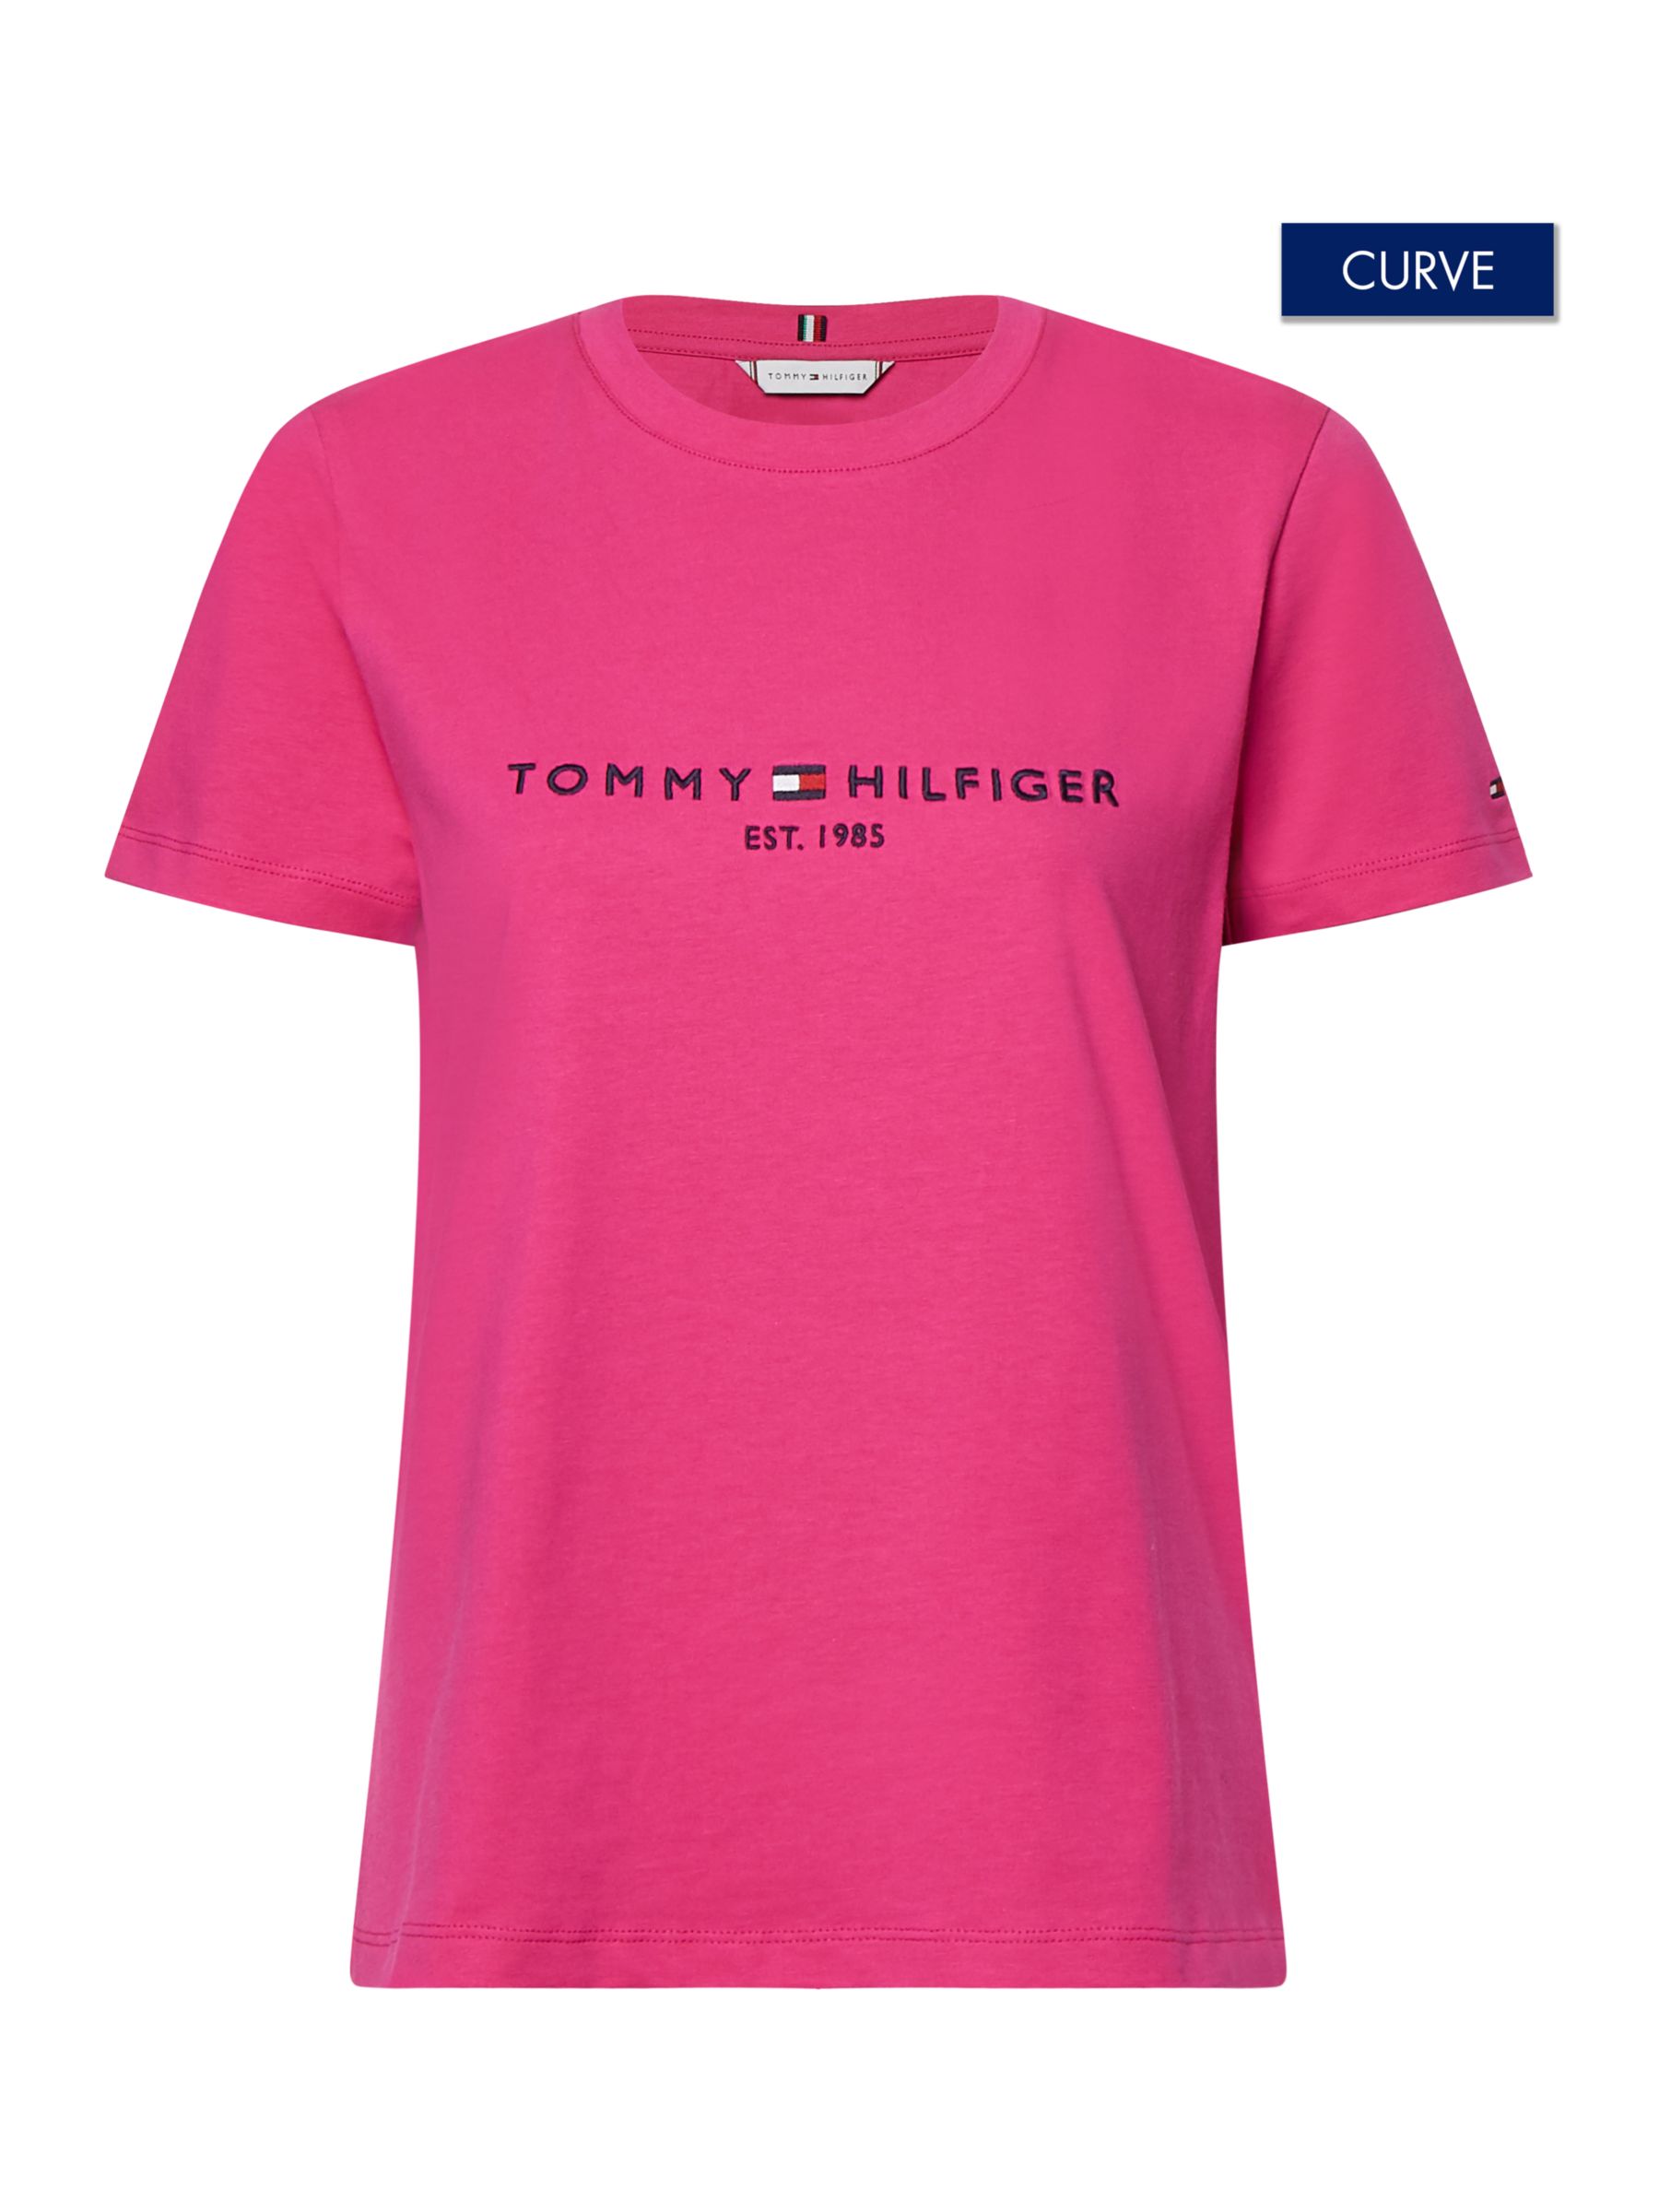 Måling bleg Begrænse Tommy Hilfiger Curve Regular Fit Logo T-Shirt, Eccentric Magenta, XXL